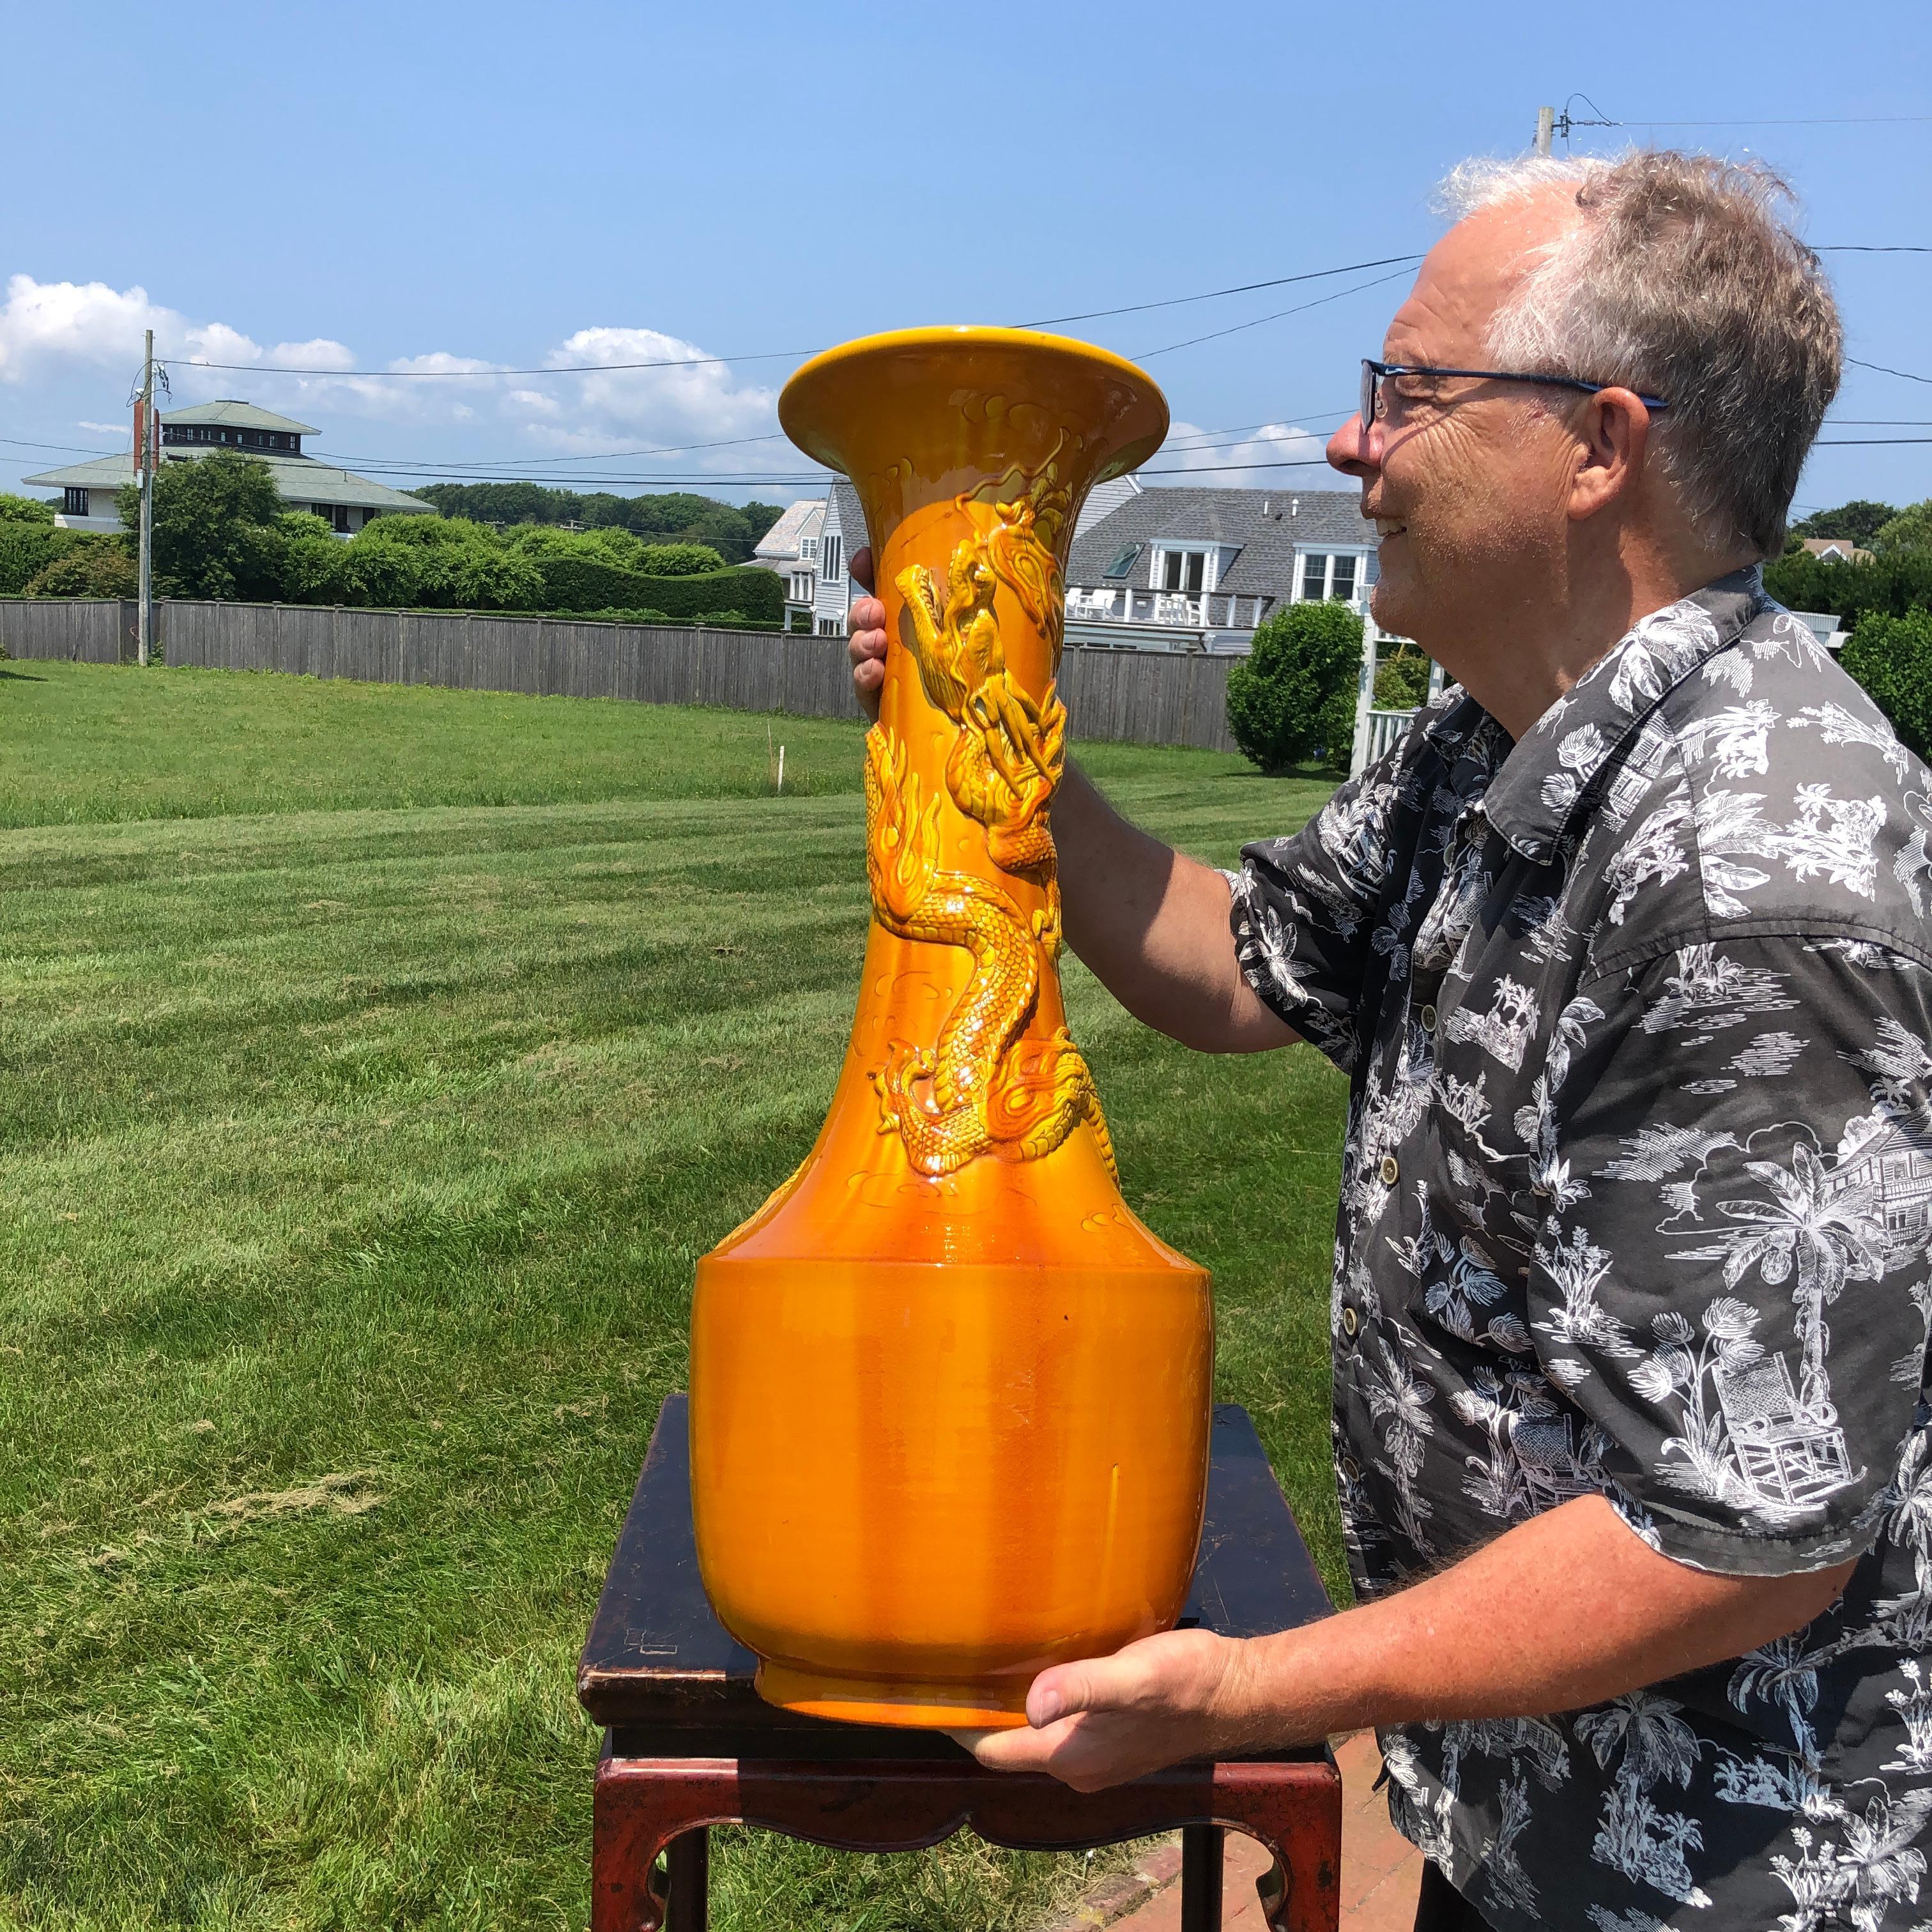 Japon, un vase dragon monumental antique de 29 pouces à glaçure craquelée jaune ambré, avec un impressionnant dragon enroulé autour de sa tige.

Il a été fabriqué par les maîtres artisans du four japonais d'Awaji, dans le sud du pays, entre la fin